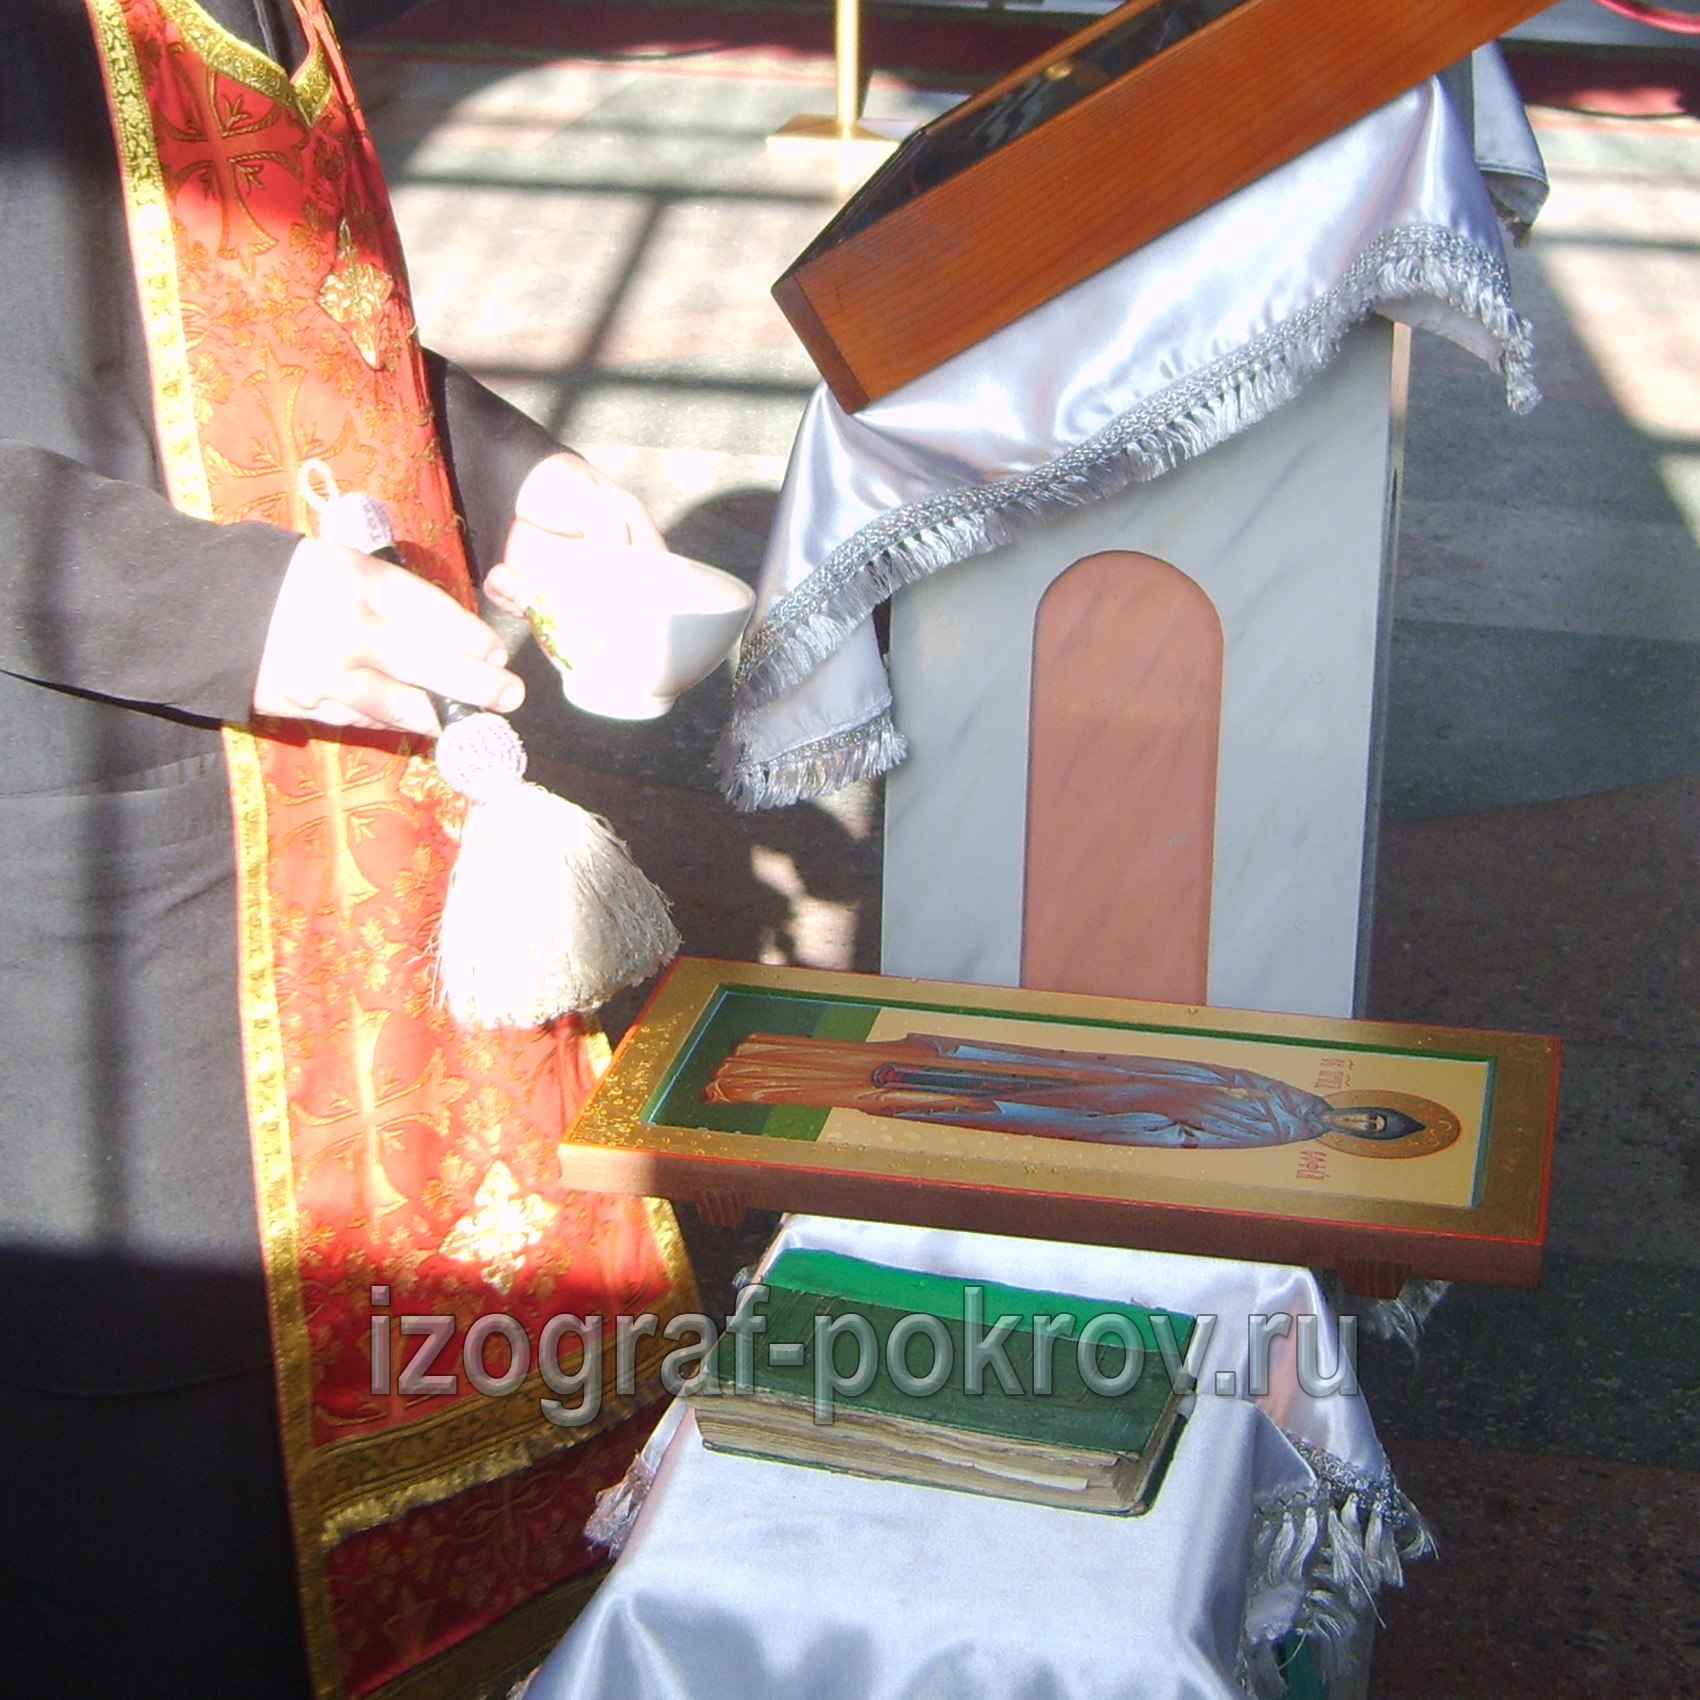 После написания иконы св. Софии Суздальской ее освящает настоятель в храме Покрова Пресвятой Богородицы